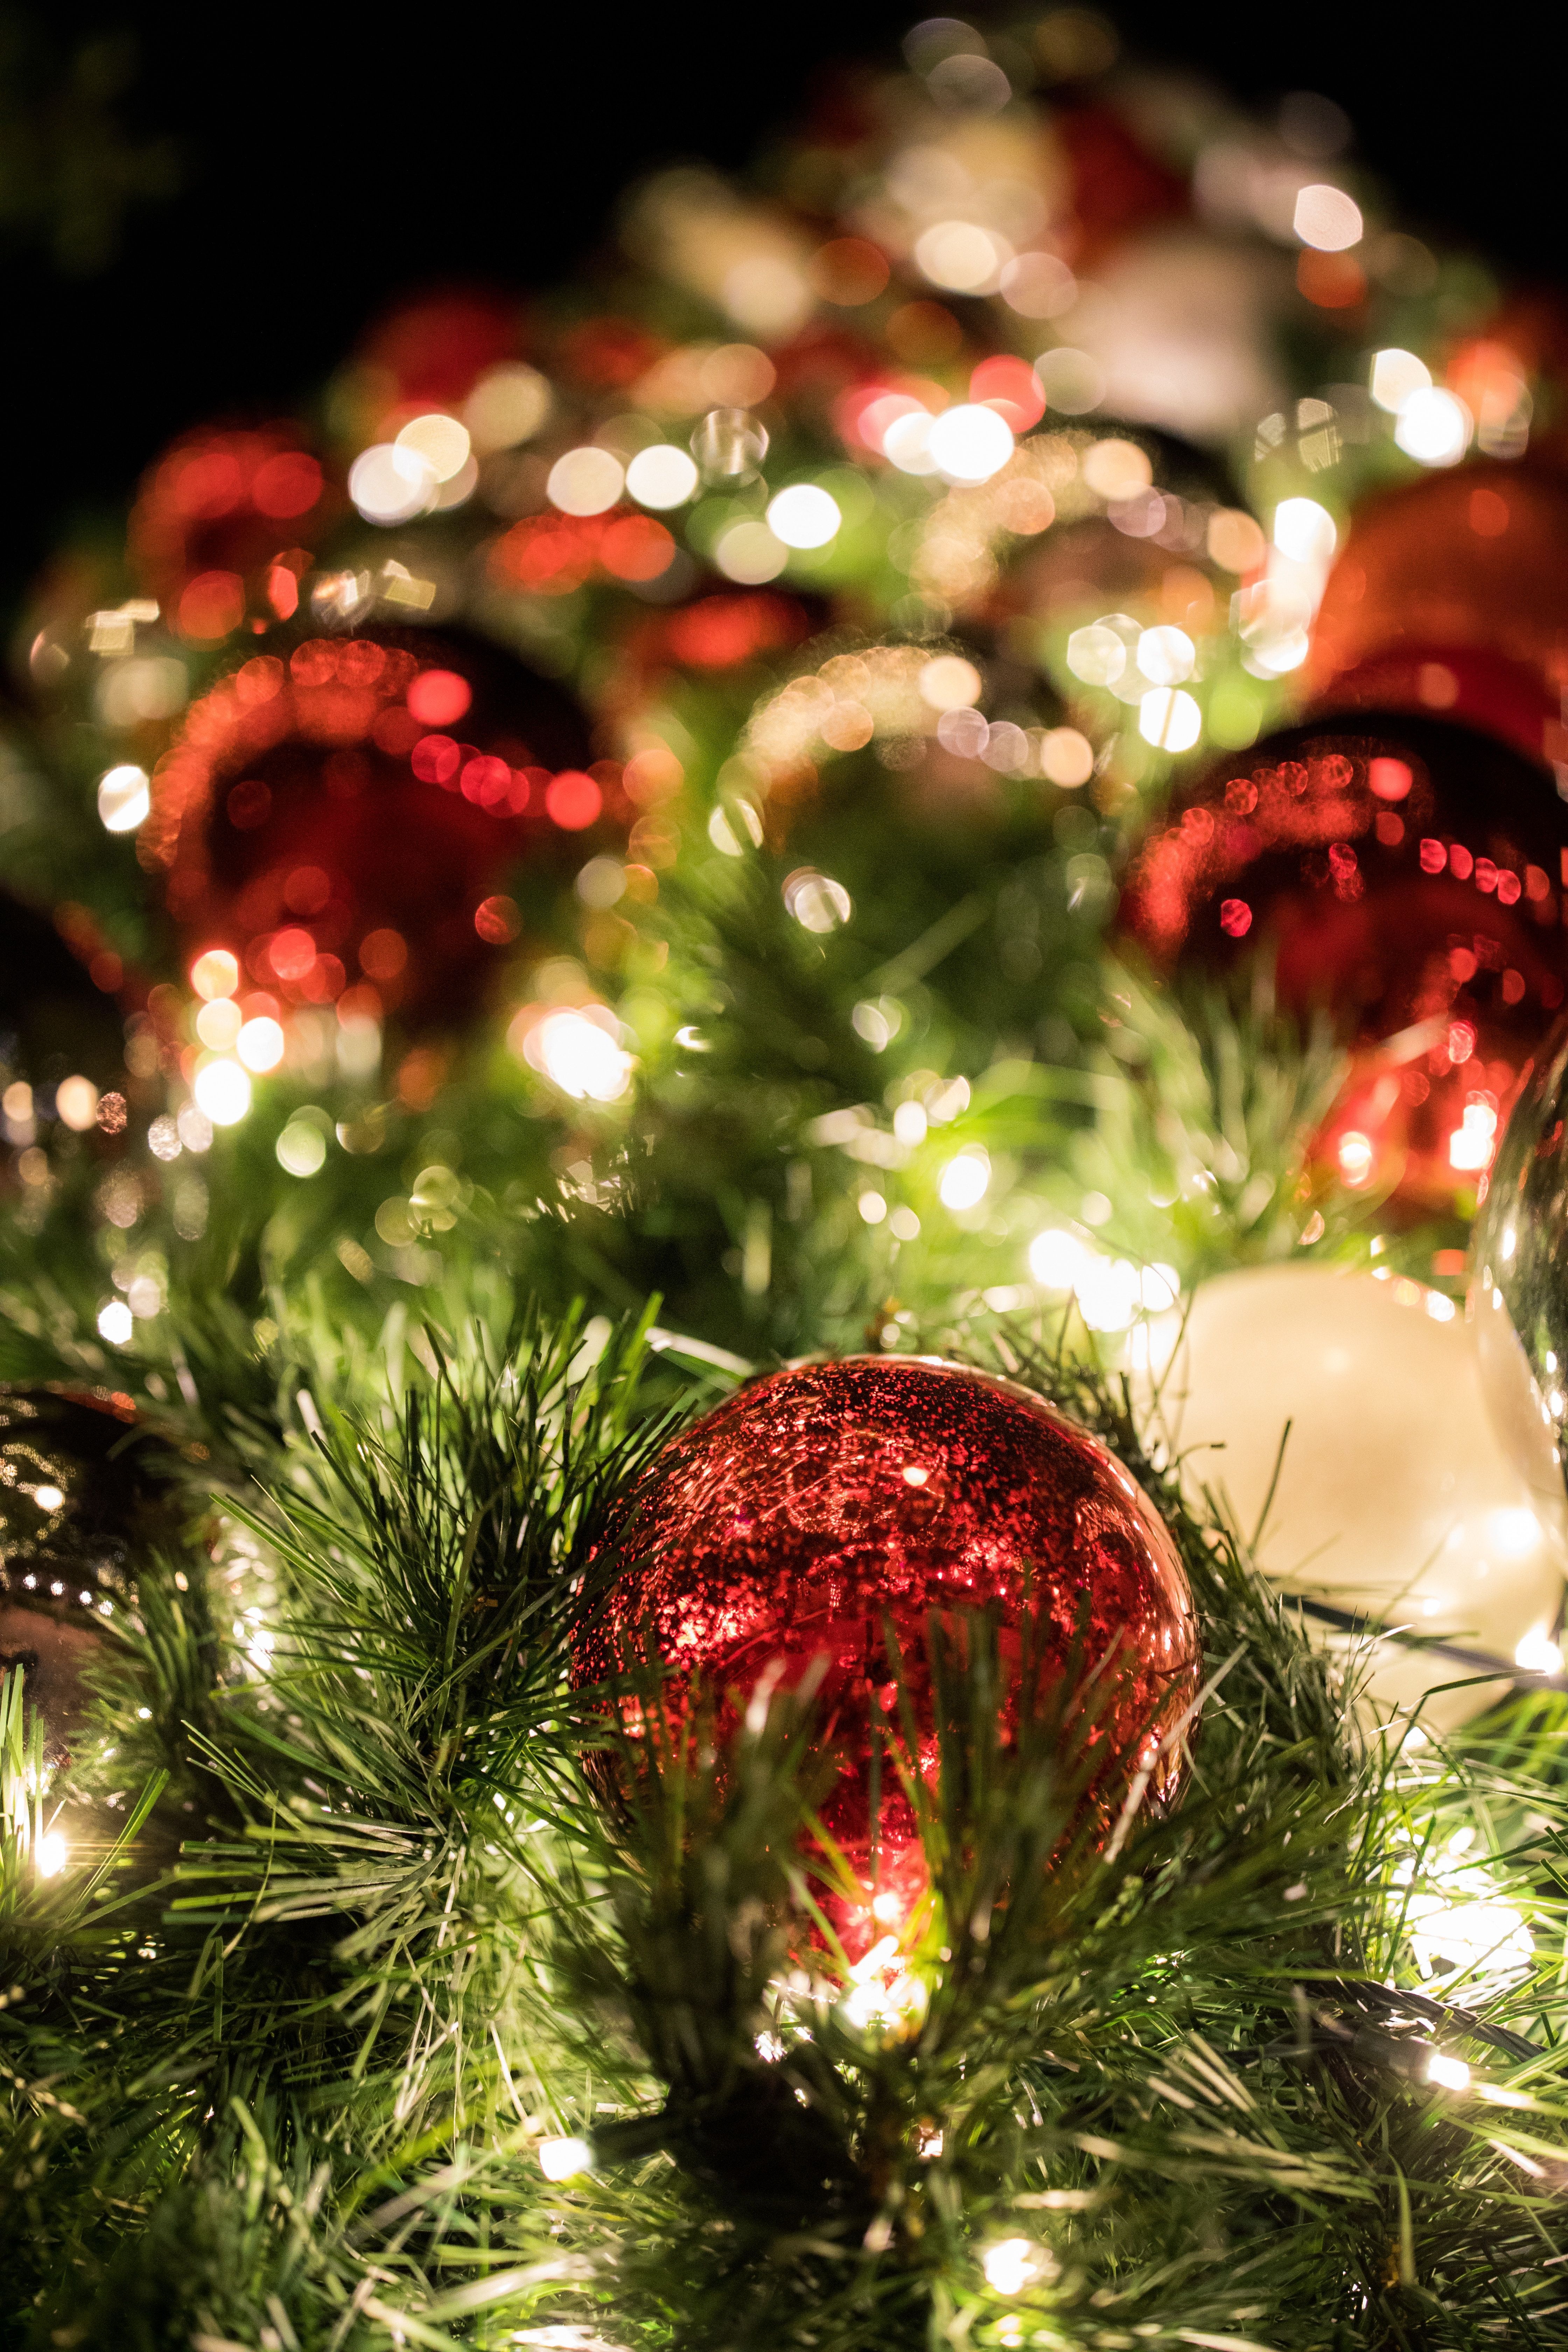  Weihnacht Hintergrundbild 4480x6720. Kostenlose Hintergrundbilder Rot Goldene Kugeln Auf Grünem Weihnachtsbaum, Bilder Für Ihren Desktop Und Fotos